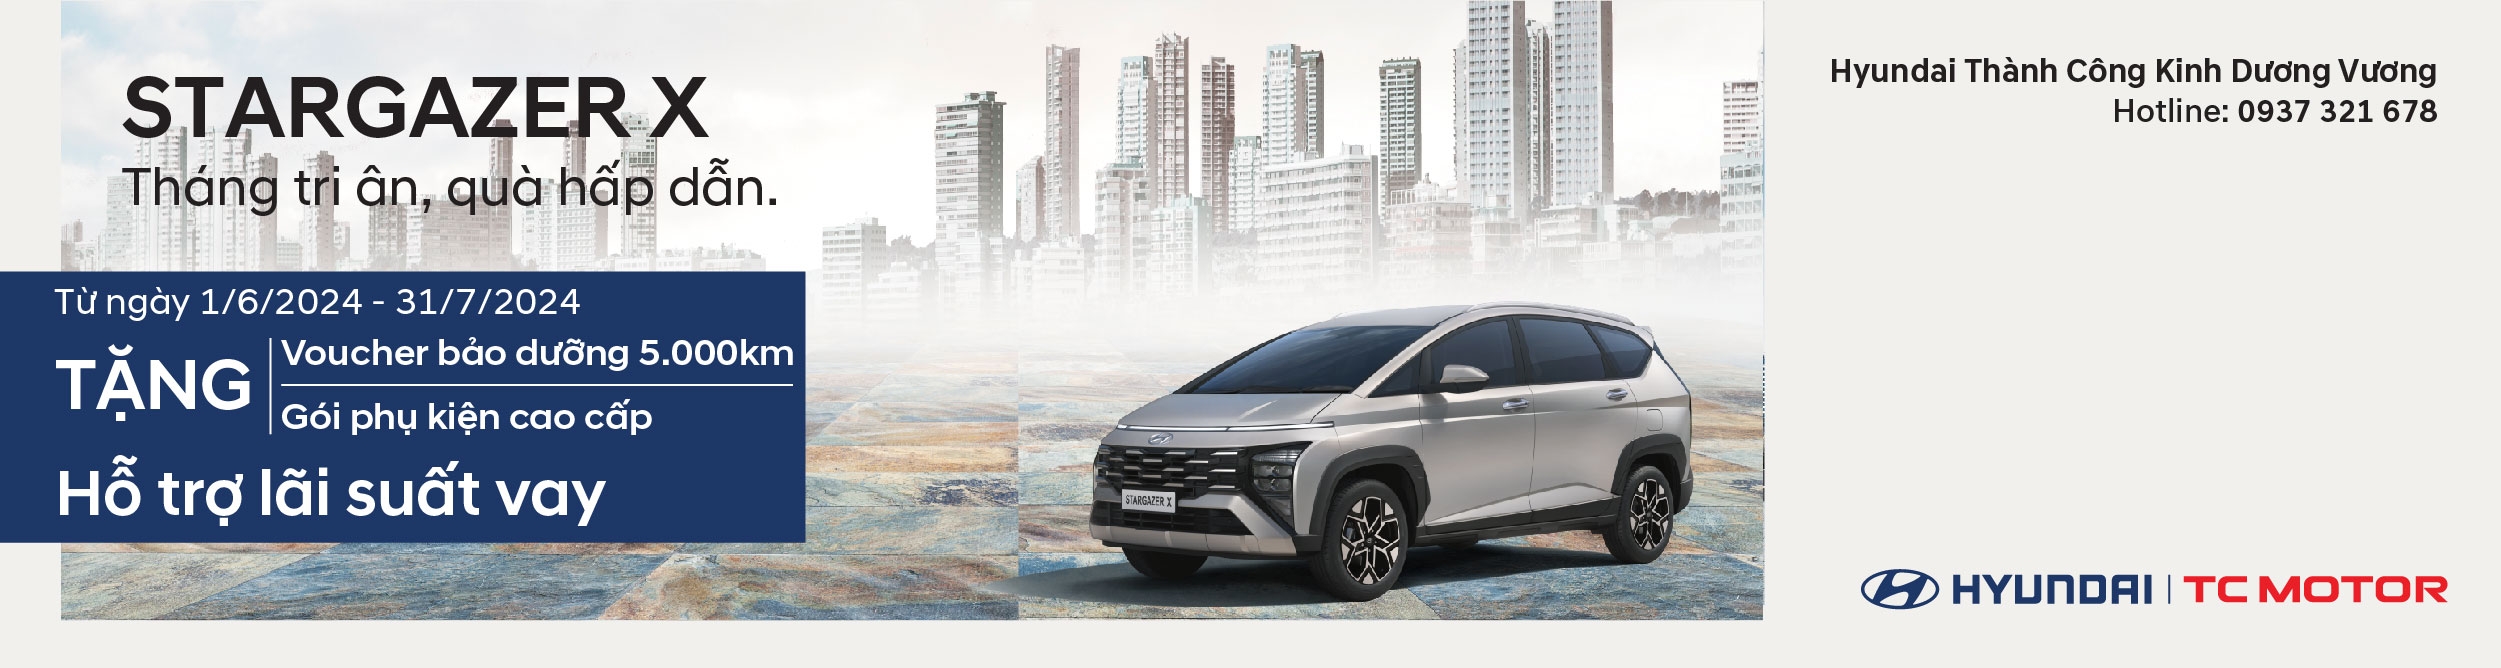 Hyundai Kinh Dương Vương đang triển khai chương trình khuyến mãi hấp dẫn cho cả hai phiên bản Stagazer: